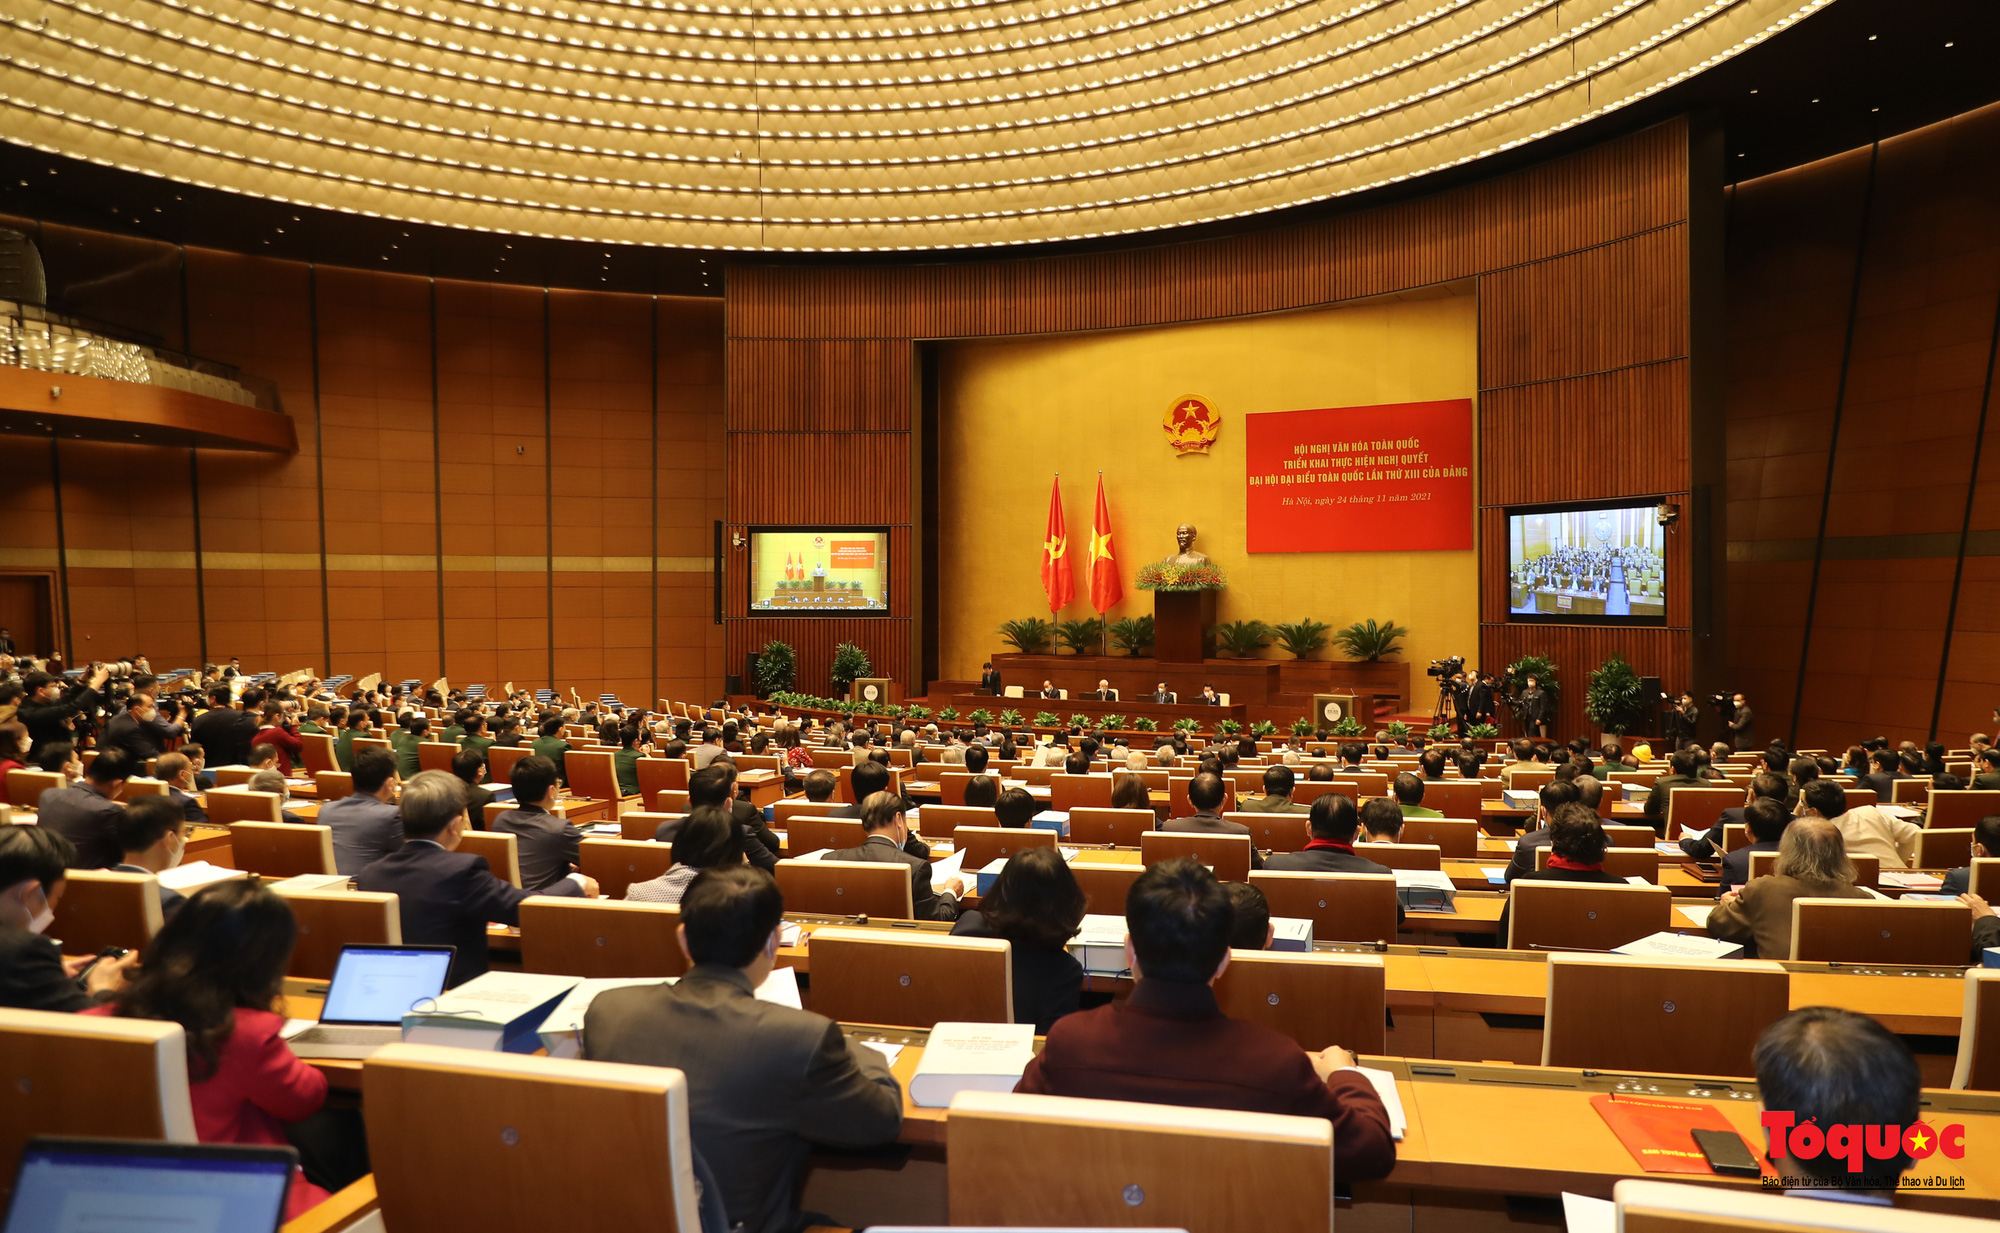 Khai mạc Hội nghị Văn hóa toàn quốc triển khai thực hiện Nghị quyết Đại hội đại biểu toàn quốc lần thứ XIII của Đảng - Ảnh 1.